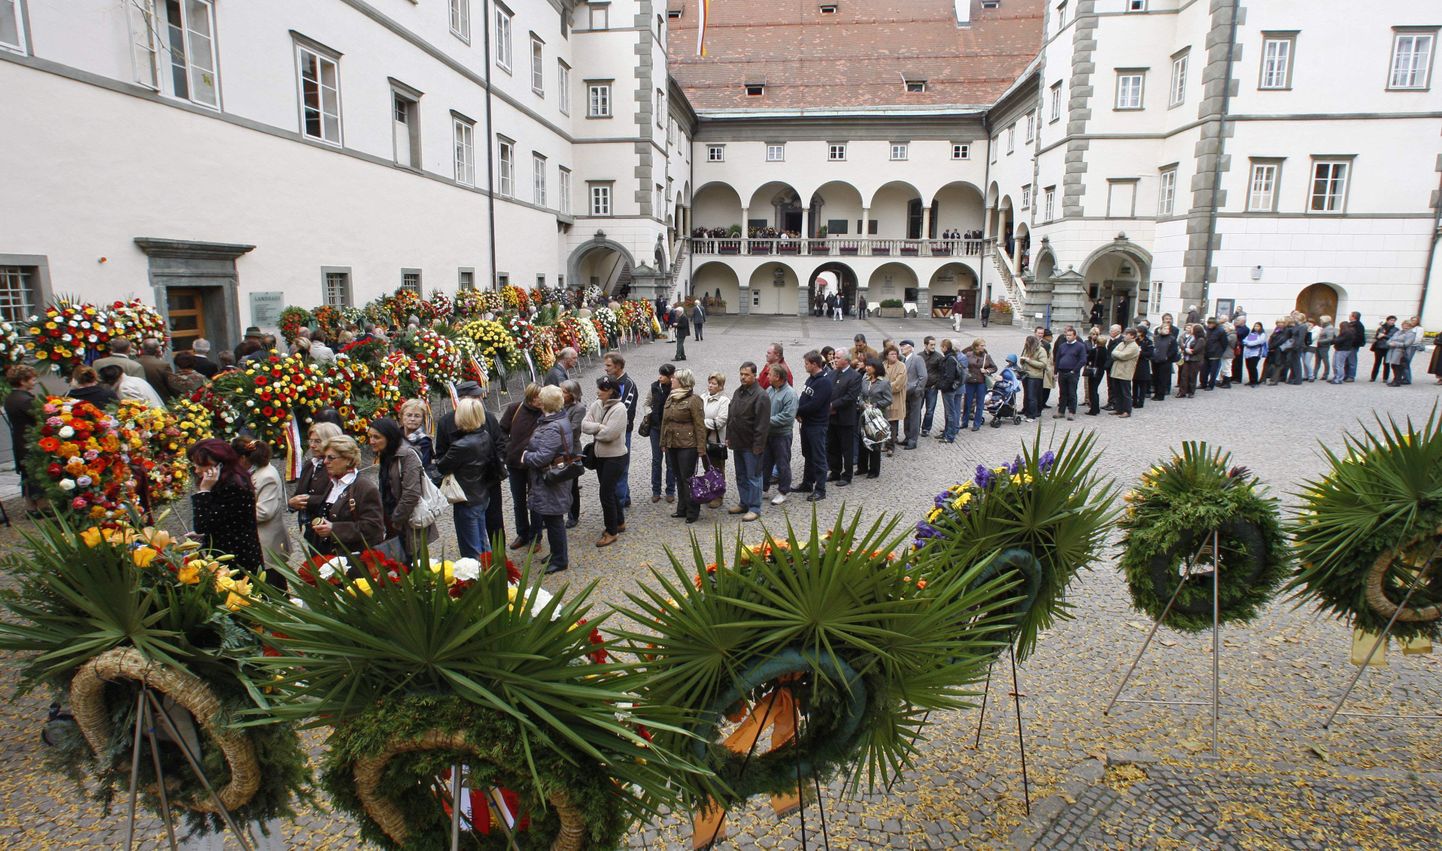 Jörg Haideri täna peetavate matuste tõttu on Klagenfurti tänavatele kogunenud kümneid tuhandeid leinajaid.